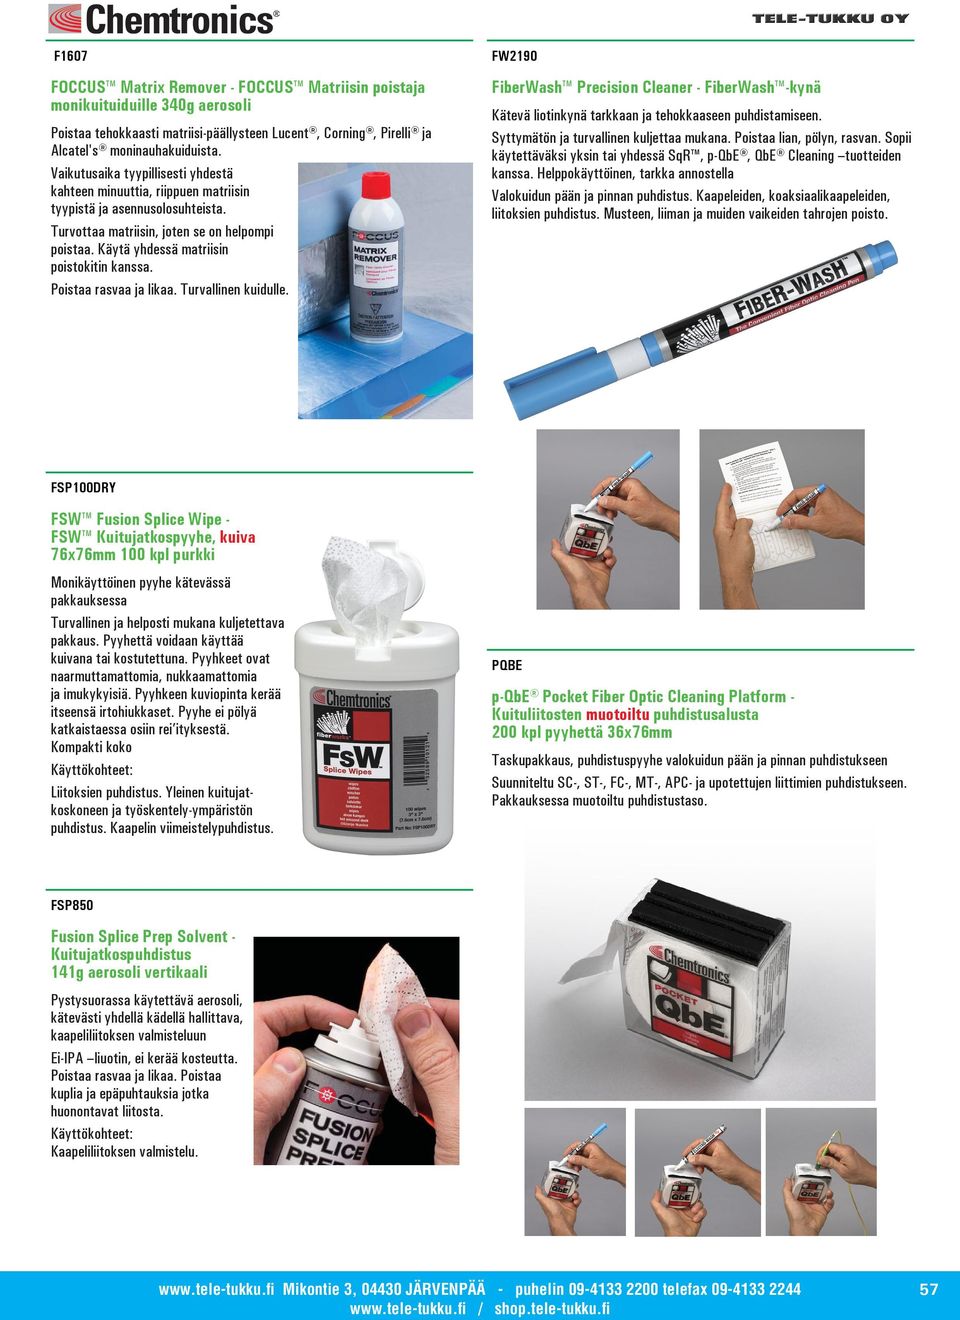 Poistaa rasvaa ja likaa. Turvallinen kuidulle. FW2190 FiberWash Precision Cleaner - FiberWash -kynä Kätevä liotinkynä tarkkaan ja tehokkaaseen puhdistamiseen.